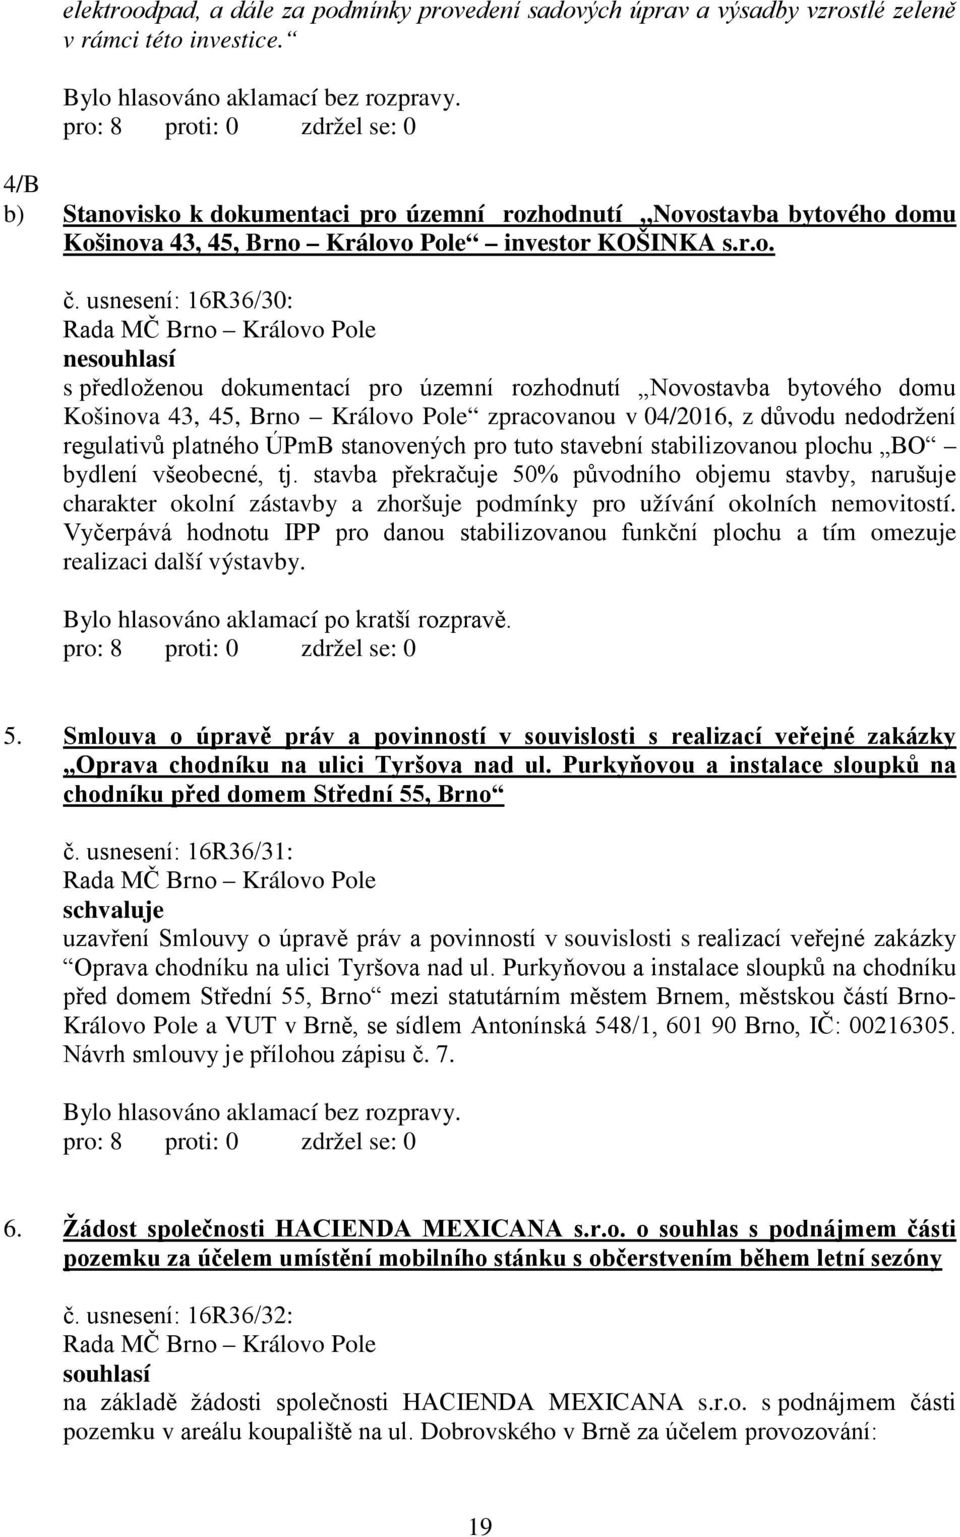 usnesení: 16R36/30: nesouhlasí s předloženou dokumentací pro územní rozhodnutí Novostavba bytového domu Košinova 43, 45, Brno Královo Pole zpracovanou v 04/2016, z důvodu nedodržení regulativů